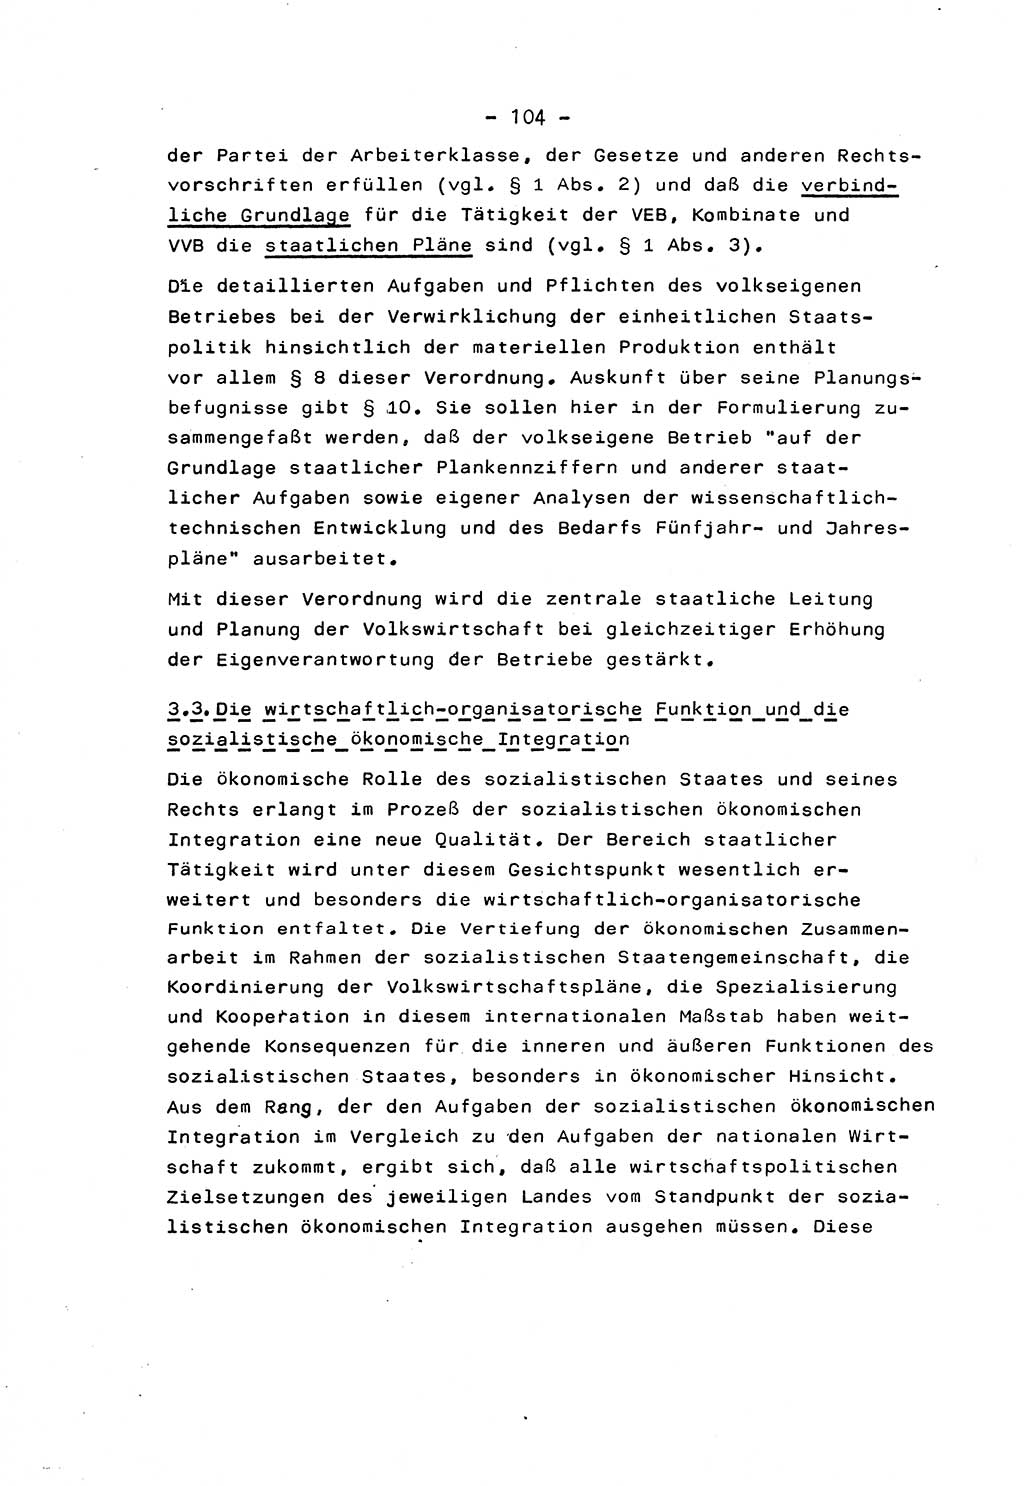 Marxistisch-leninistische Staats- und Rechtstheorie [Deutsche Demokratische Republik (DDR)] 1975, Seite 104 (ML St.-R.-Th. DDR 1975, S. 104)